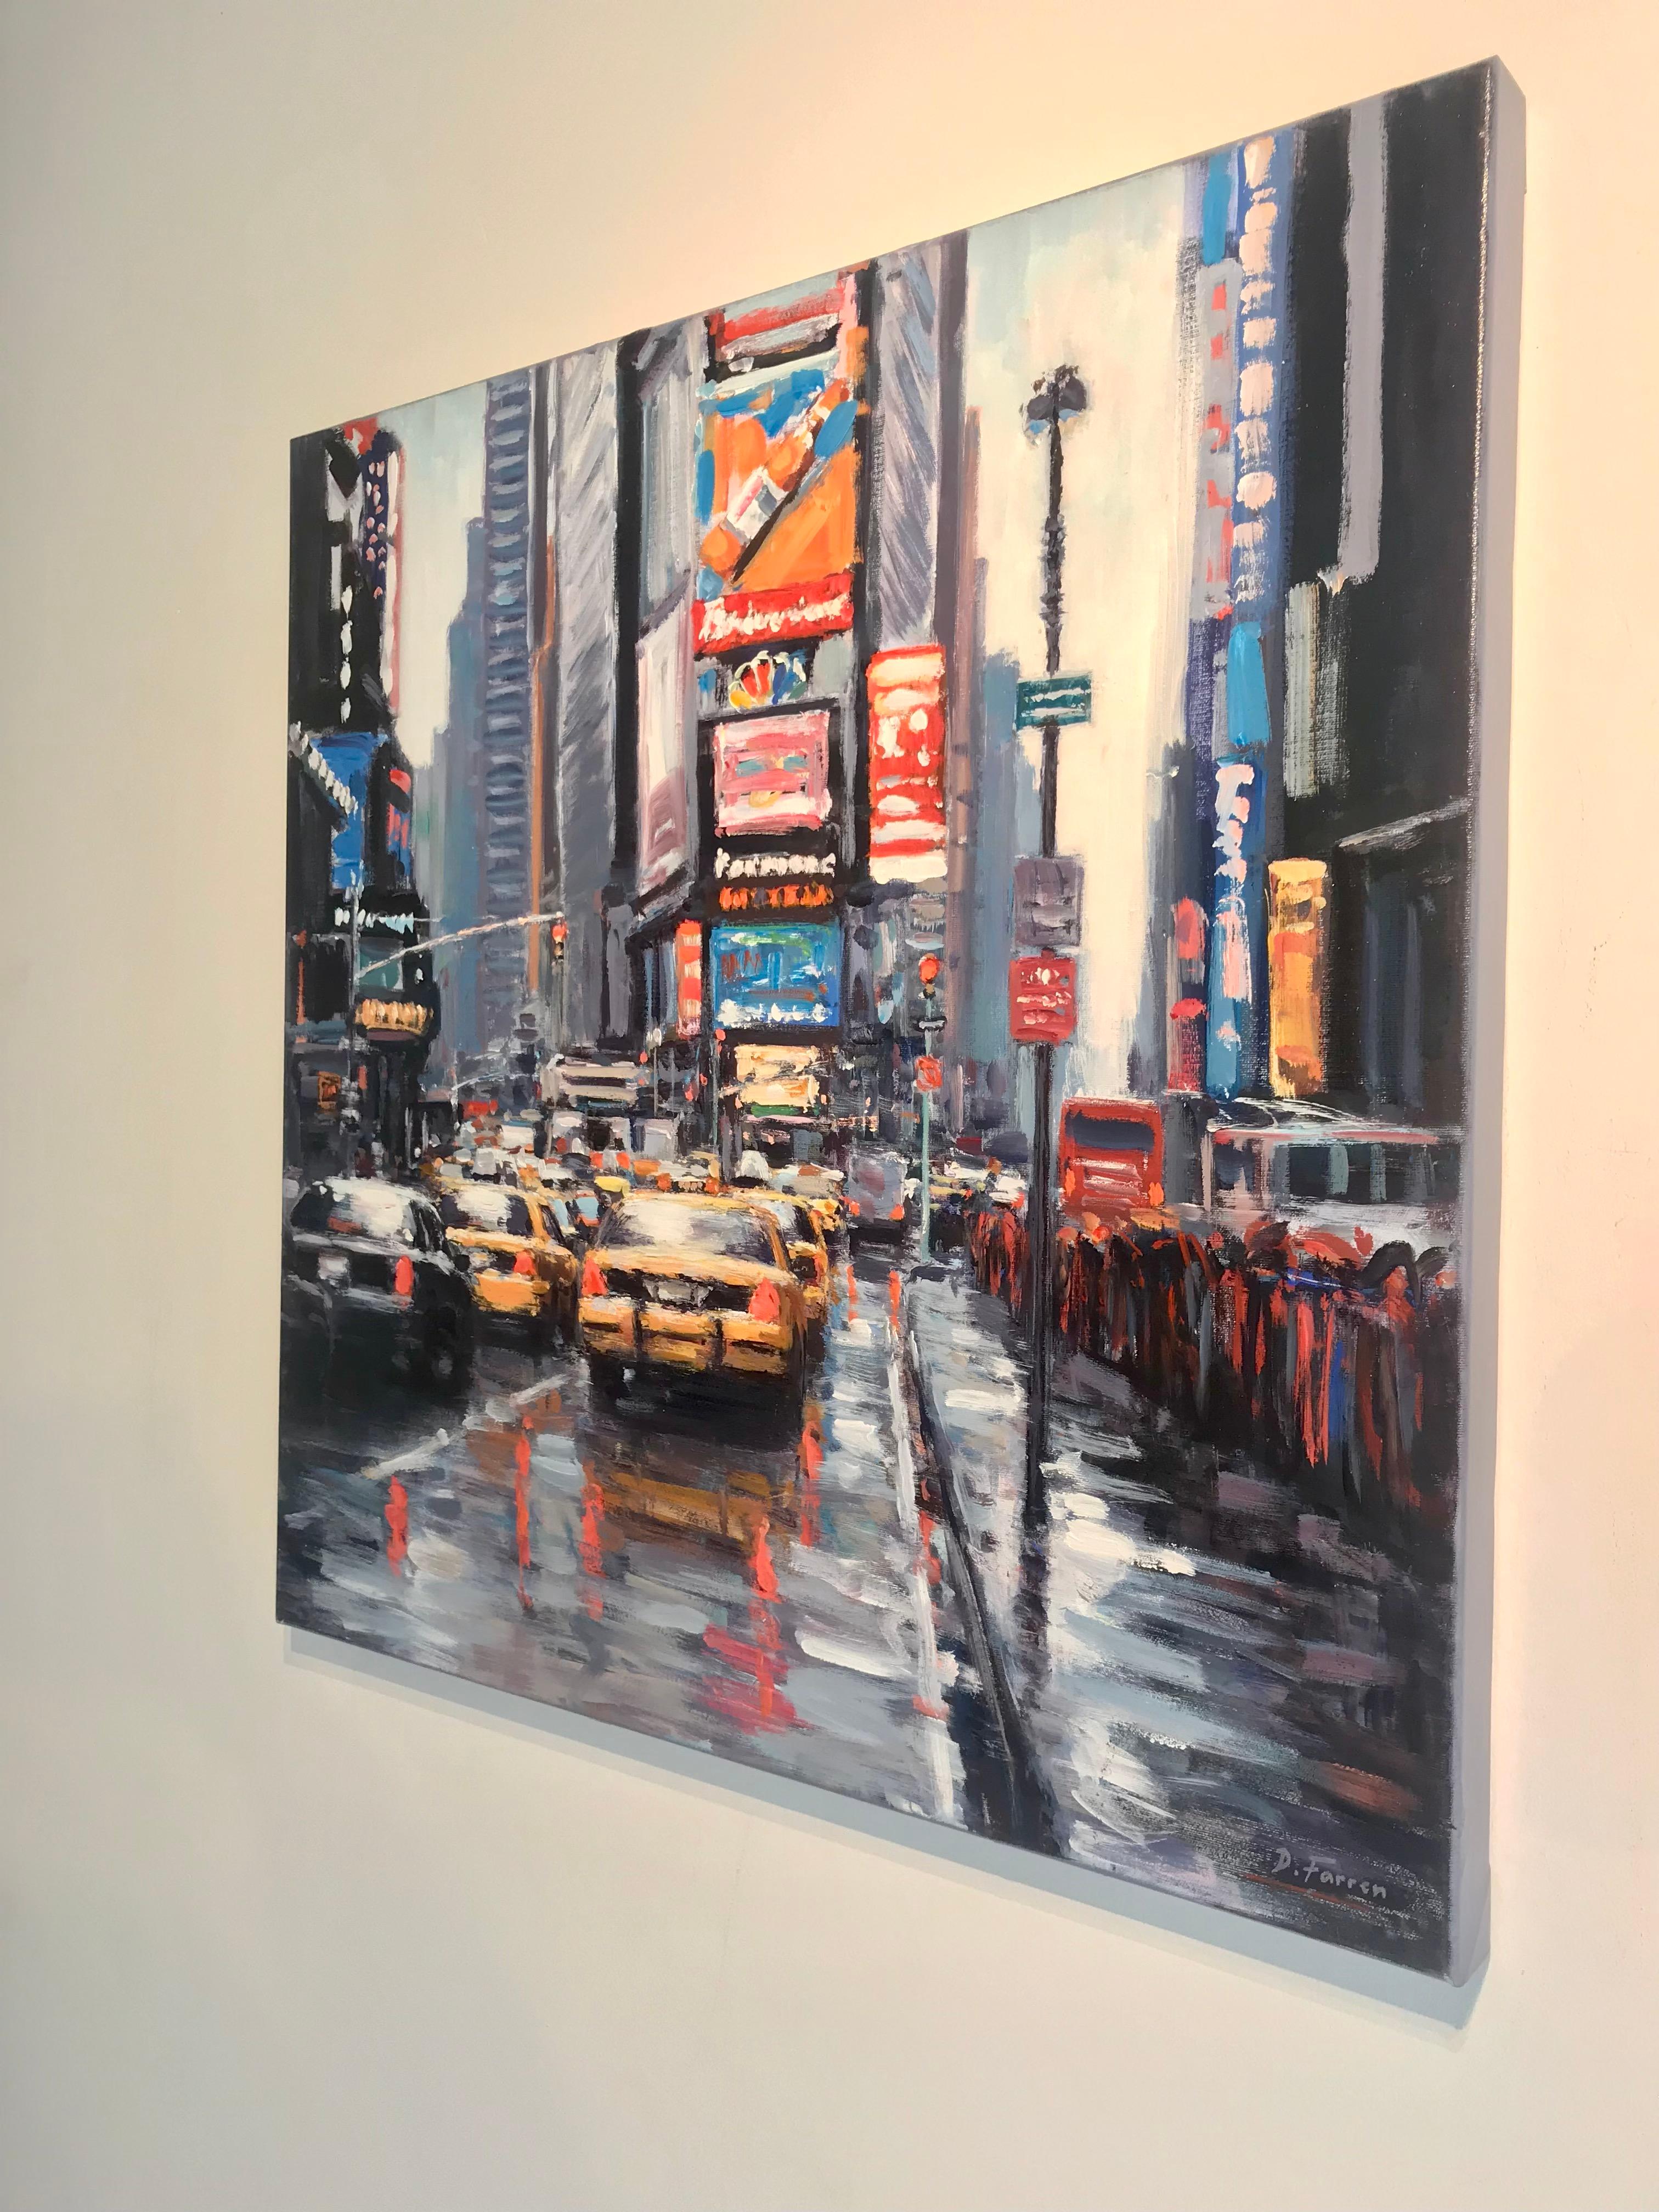 Dieses Gemälde des zeitgenössischen Impressionisten David Farren zeigt die intensiven Illuminationen, die die Hauptstadt verschönern. Die leuchtenden Lichter des glühenden NewYork erstrecken sich über die ganze Stadt und lassen die ganze Perspektive